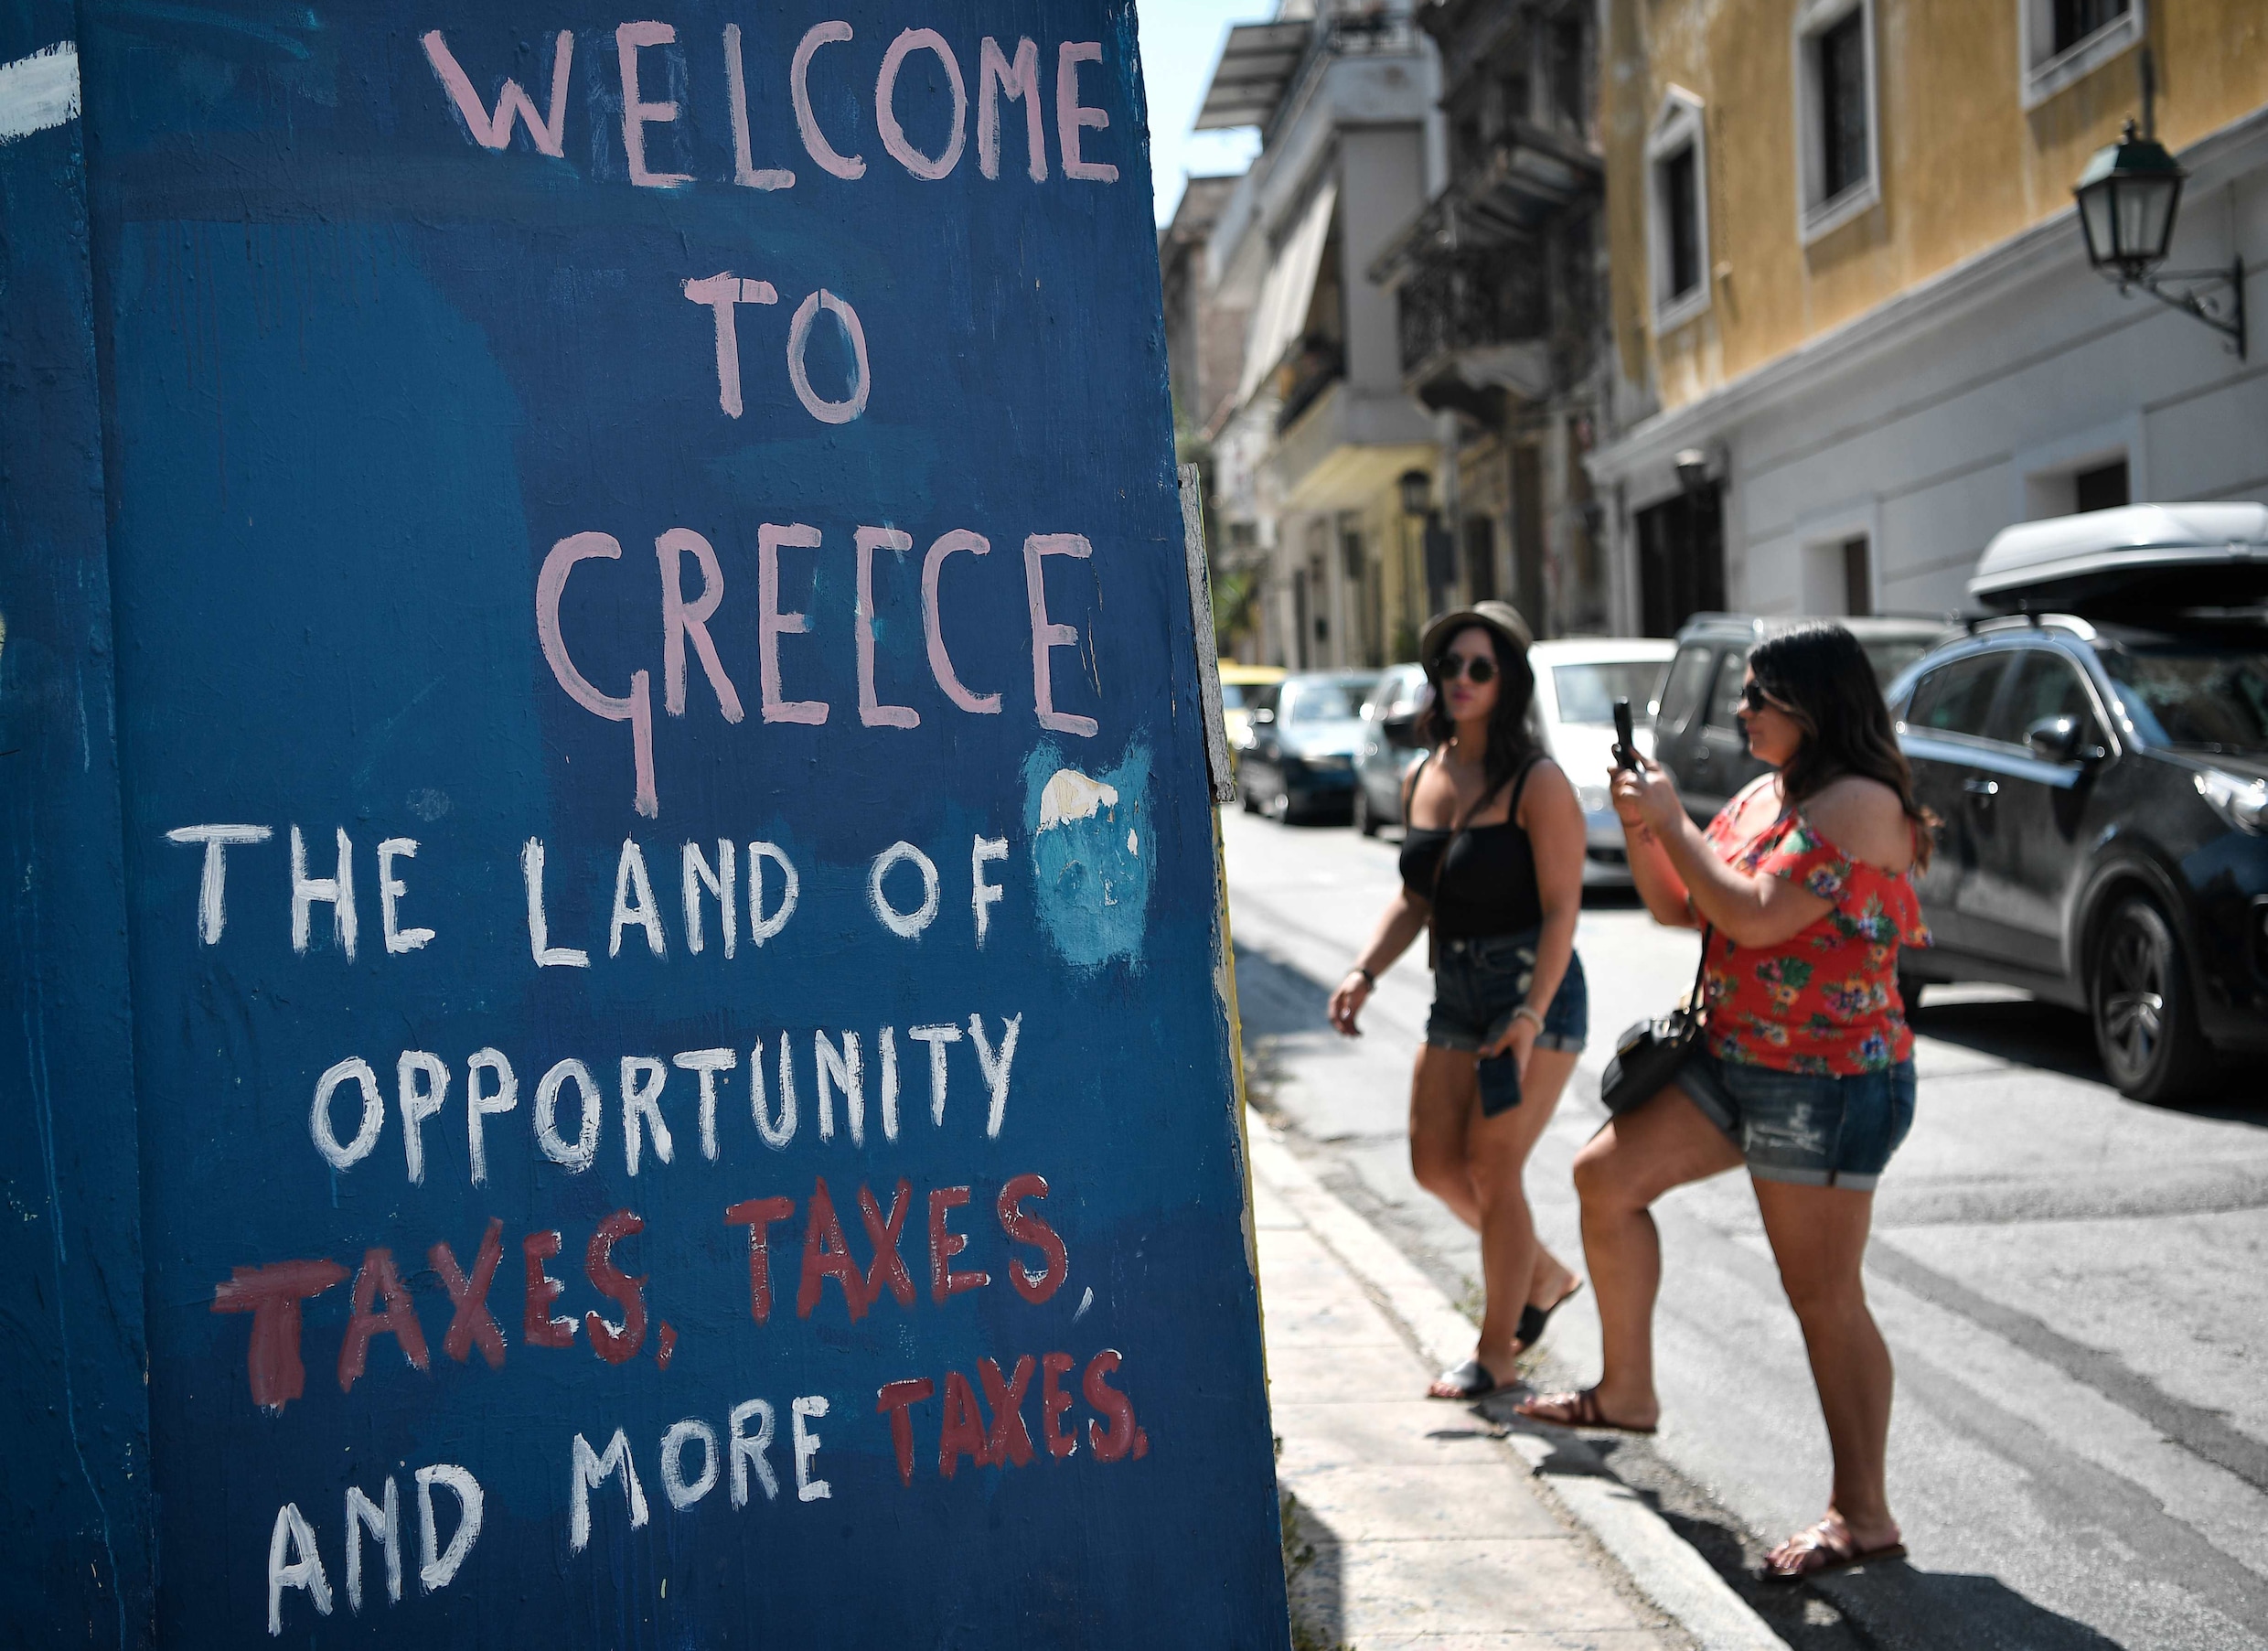 Van de Griekse wederopstanding is nog lang niet iedereen overtuigd